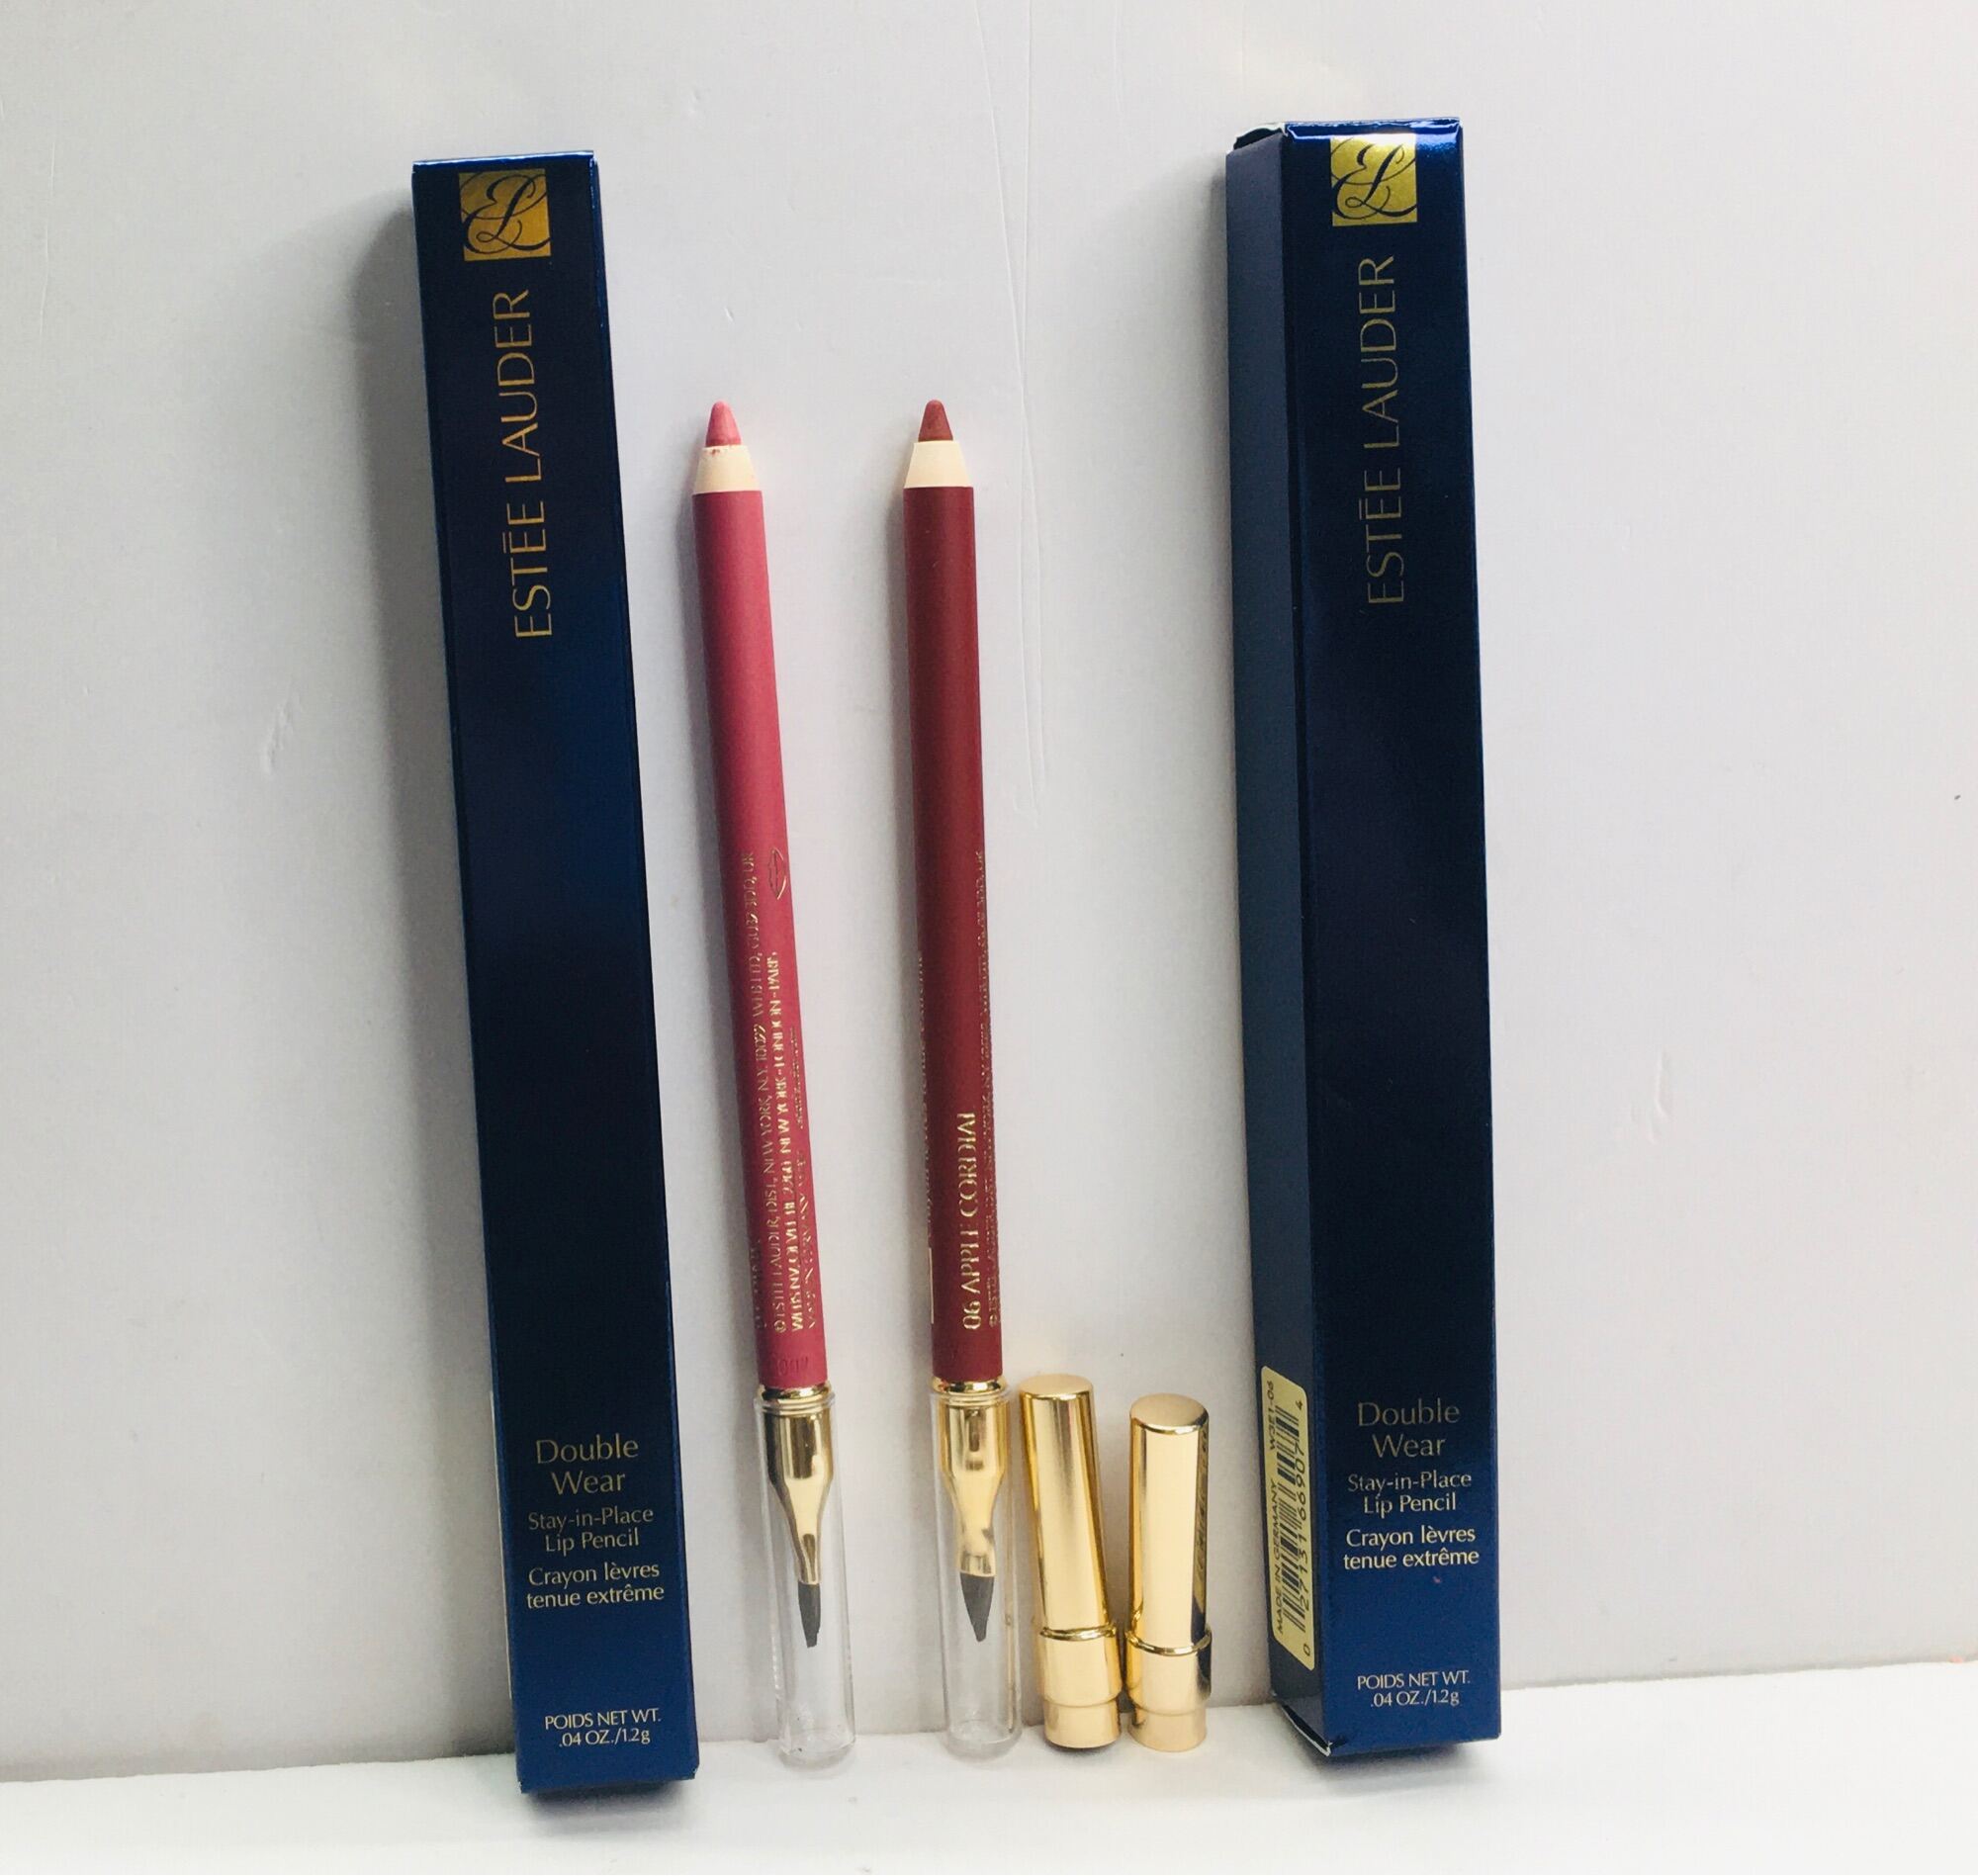 Son chì kẻ môi Estee Lauder double wear stay in place lip pencil[ Hàng USA] giá rẻ